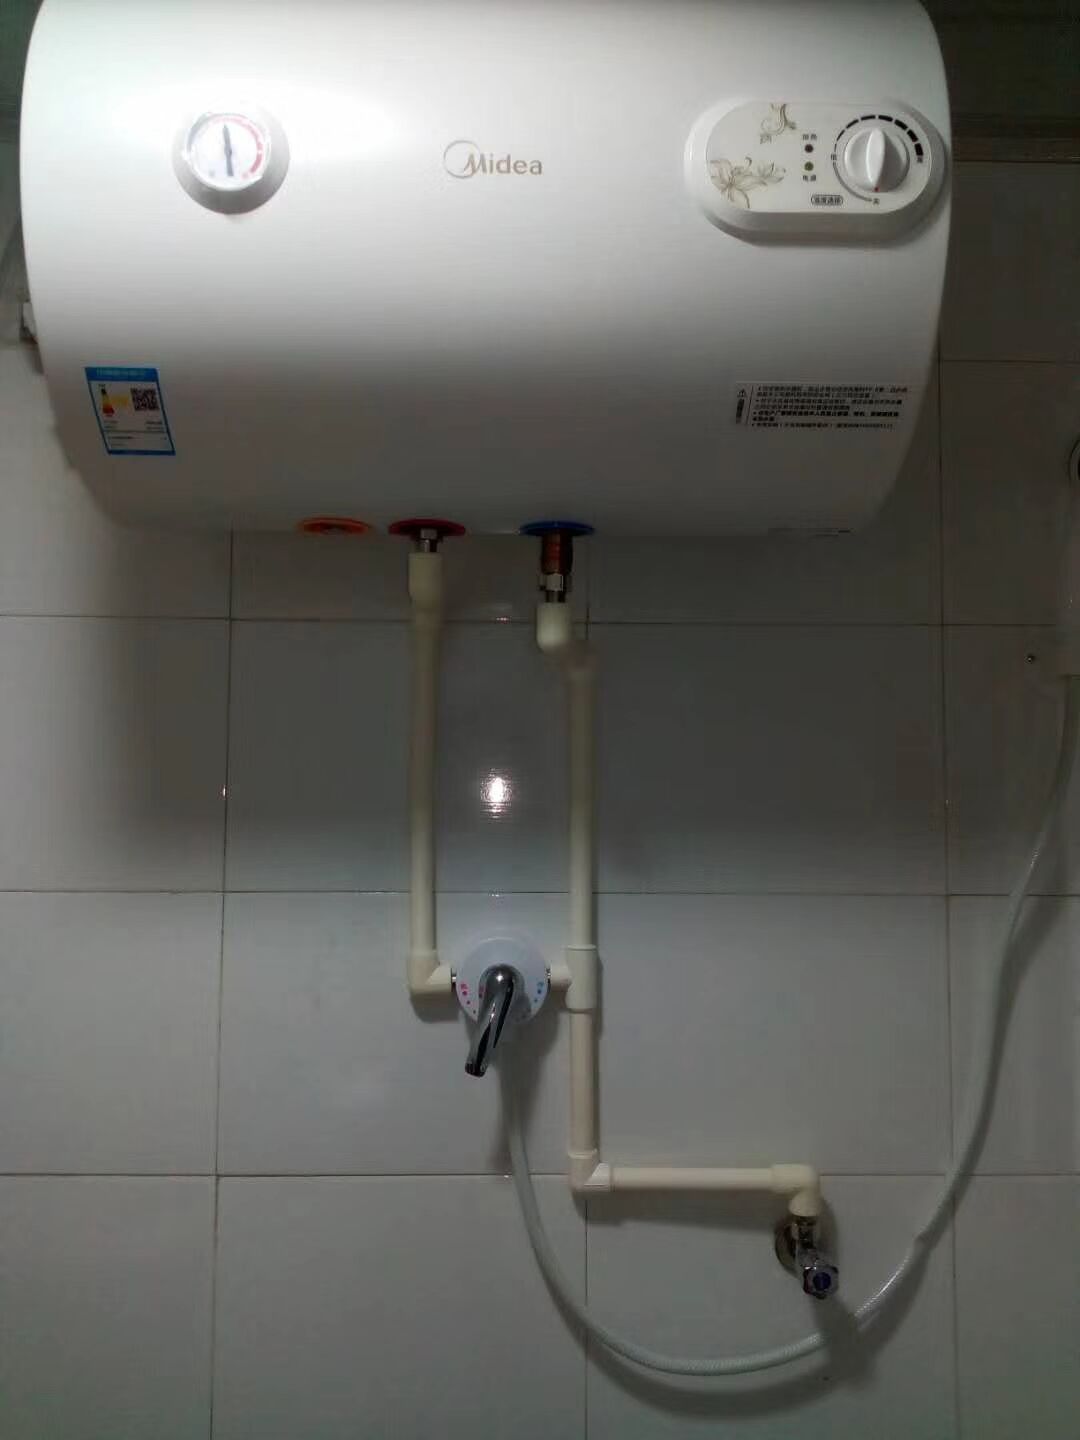 美的热水器 美的热水器定制 美的热水器安装出售 美的热水器价格图片